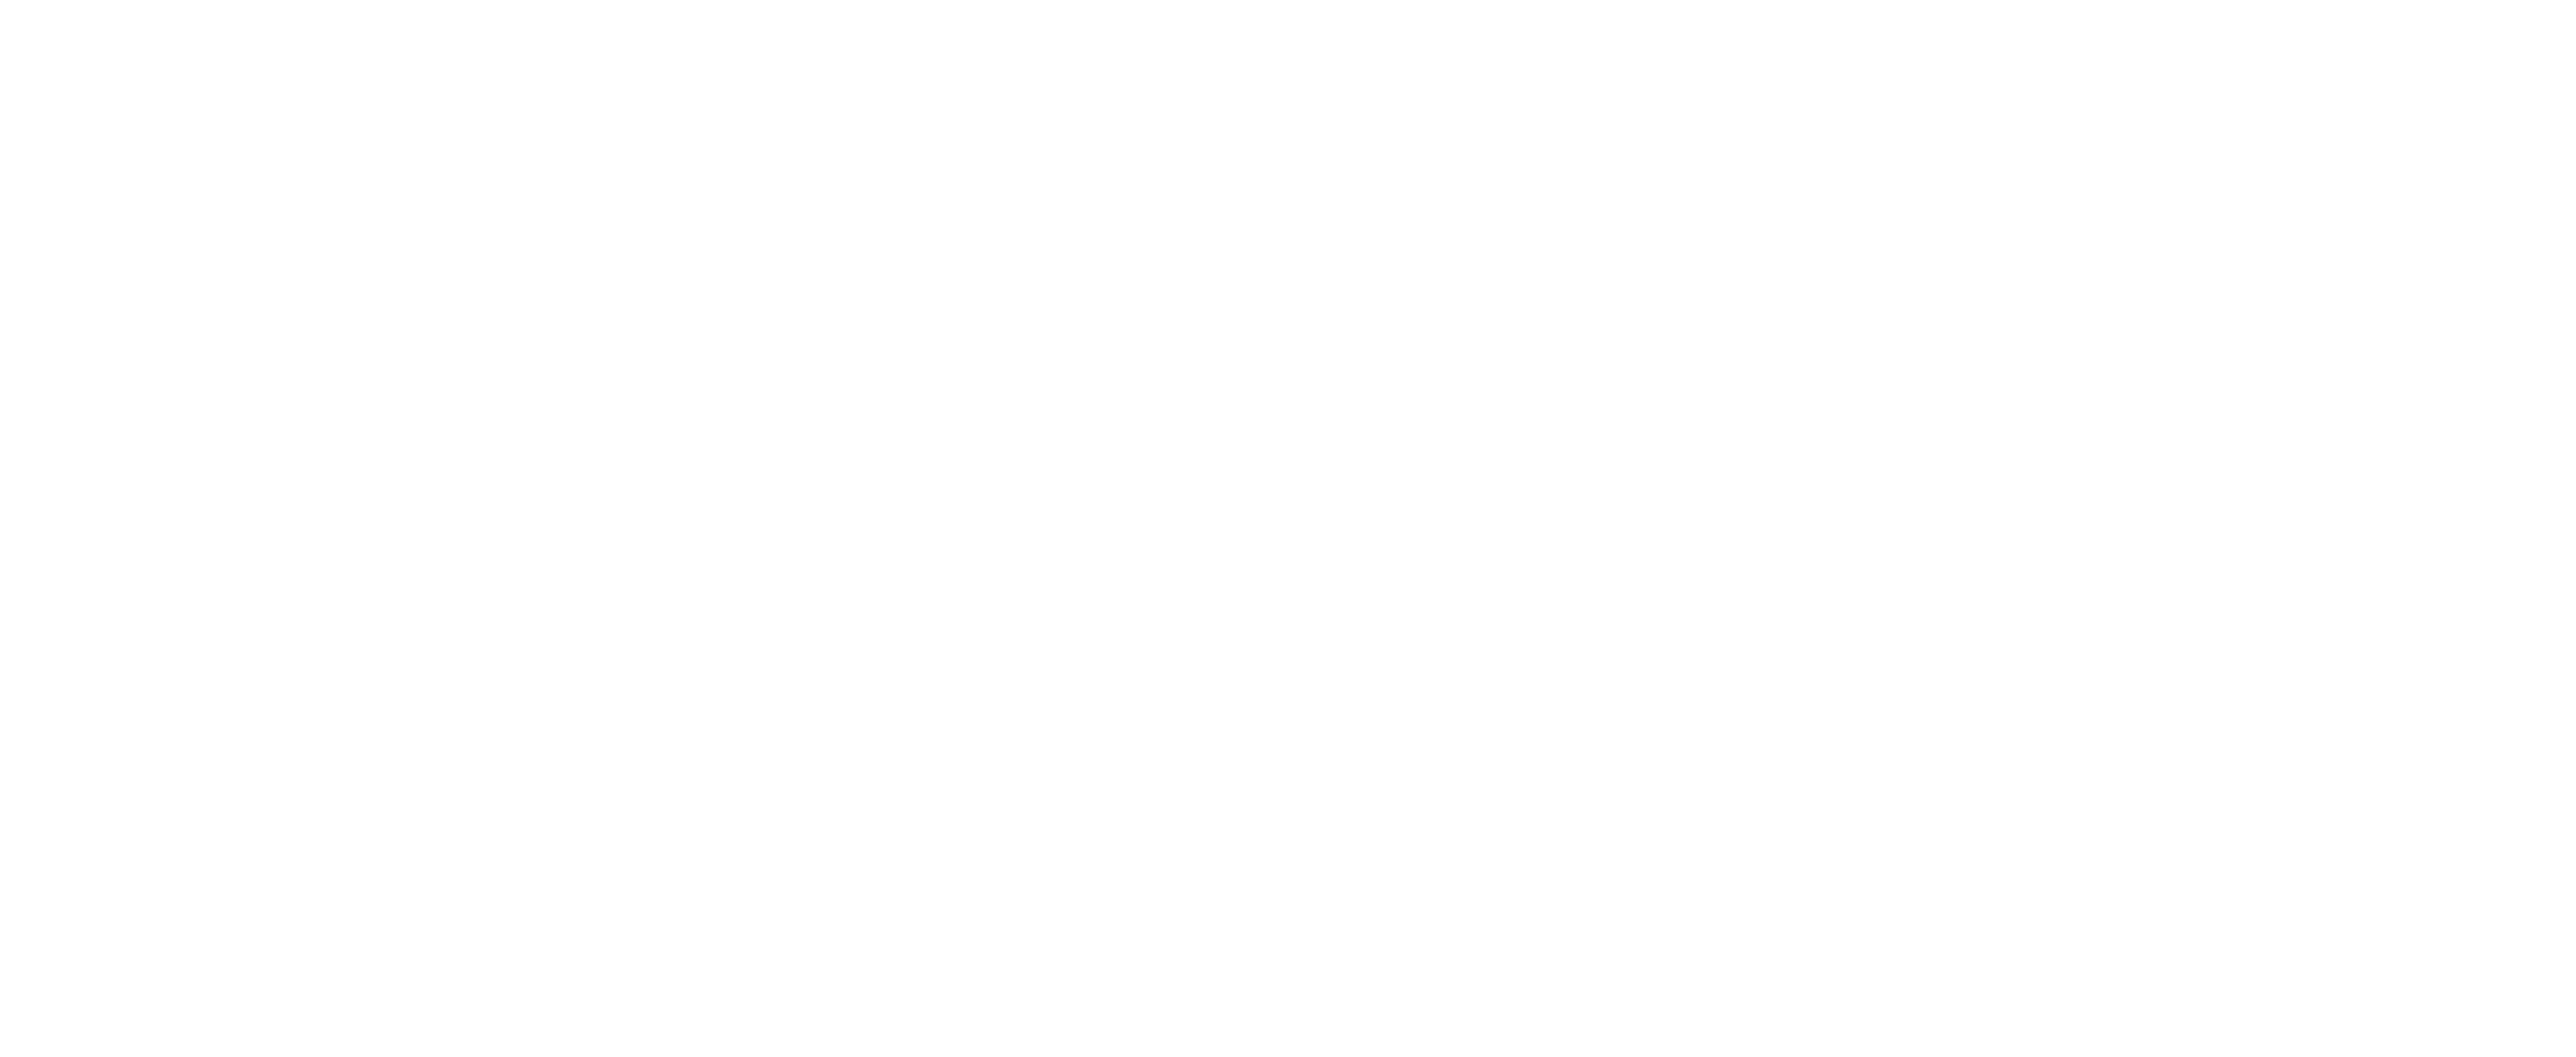 La Grange, Centre / Arts et Sciences / UNIL